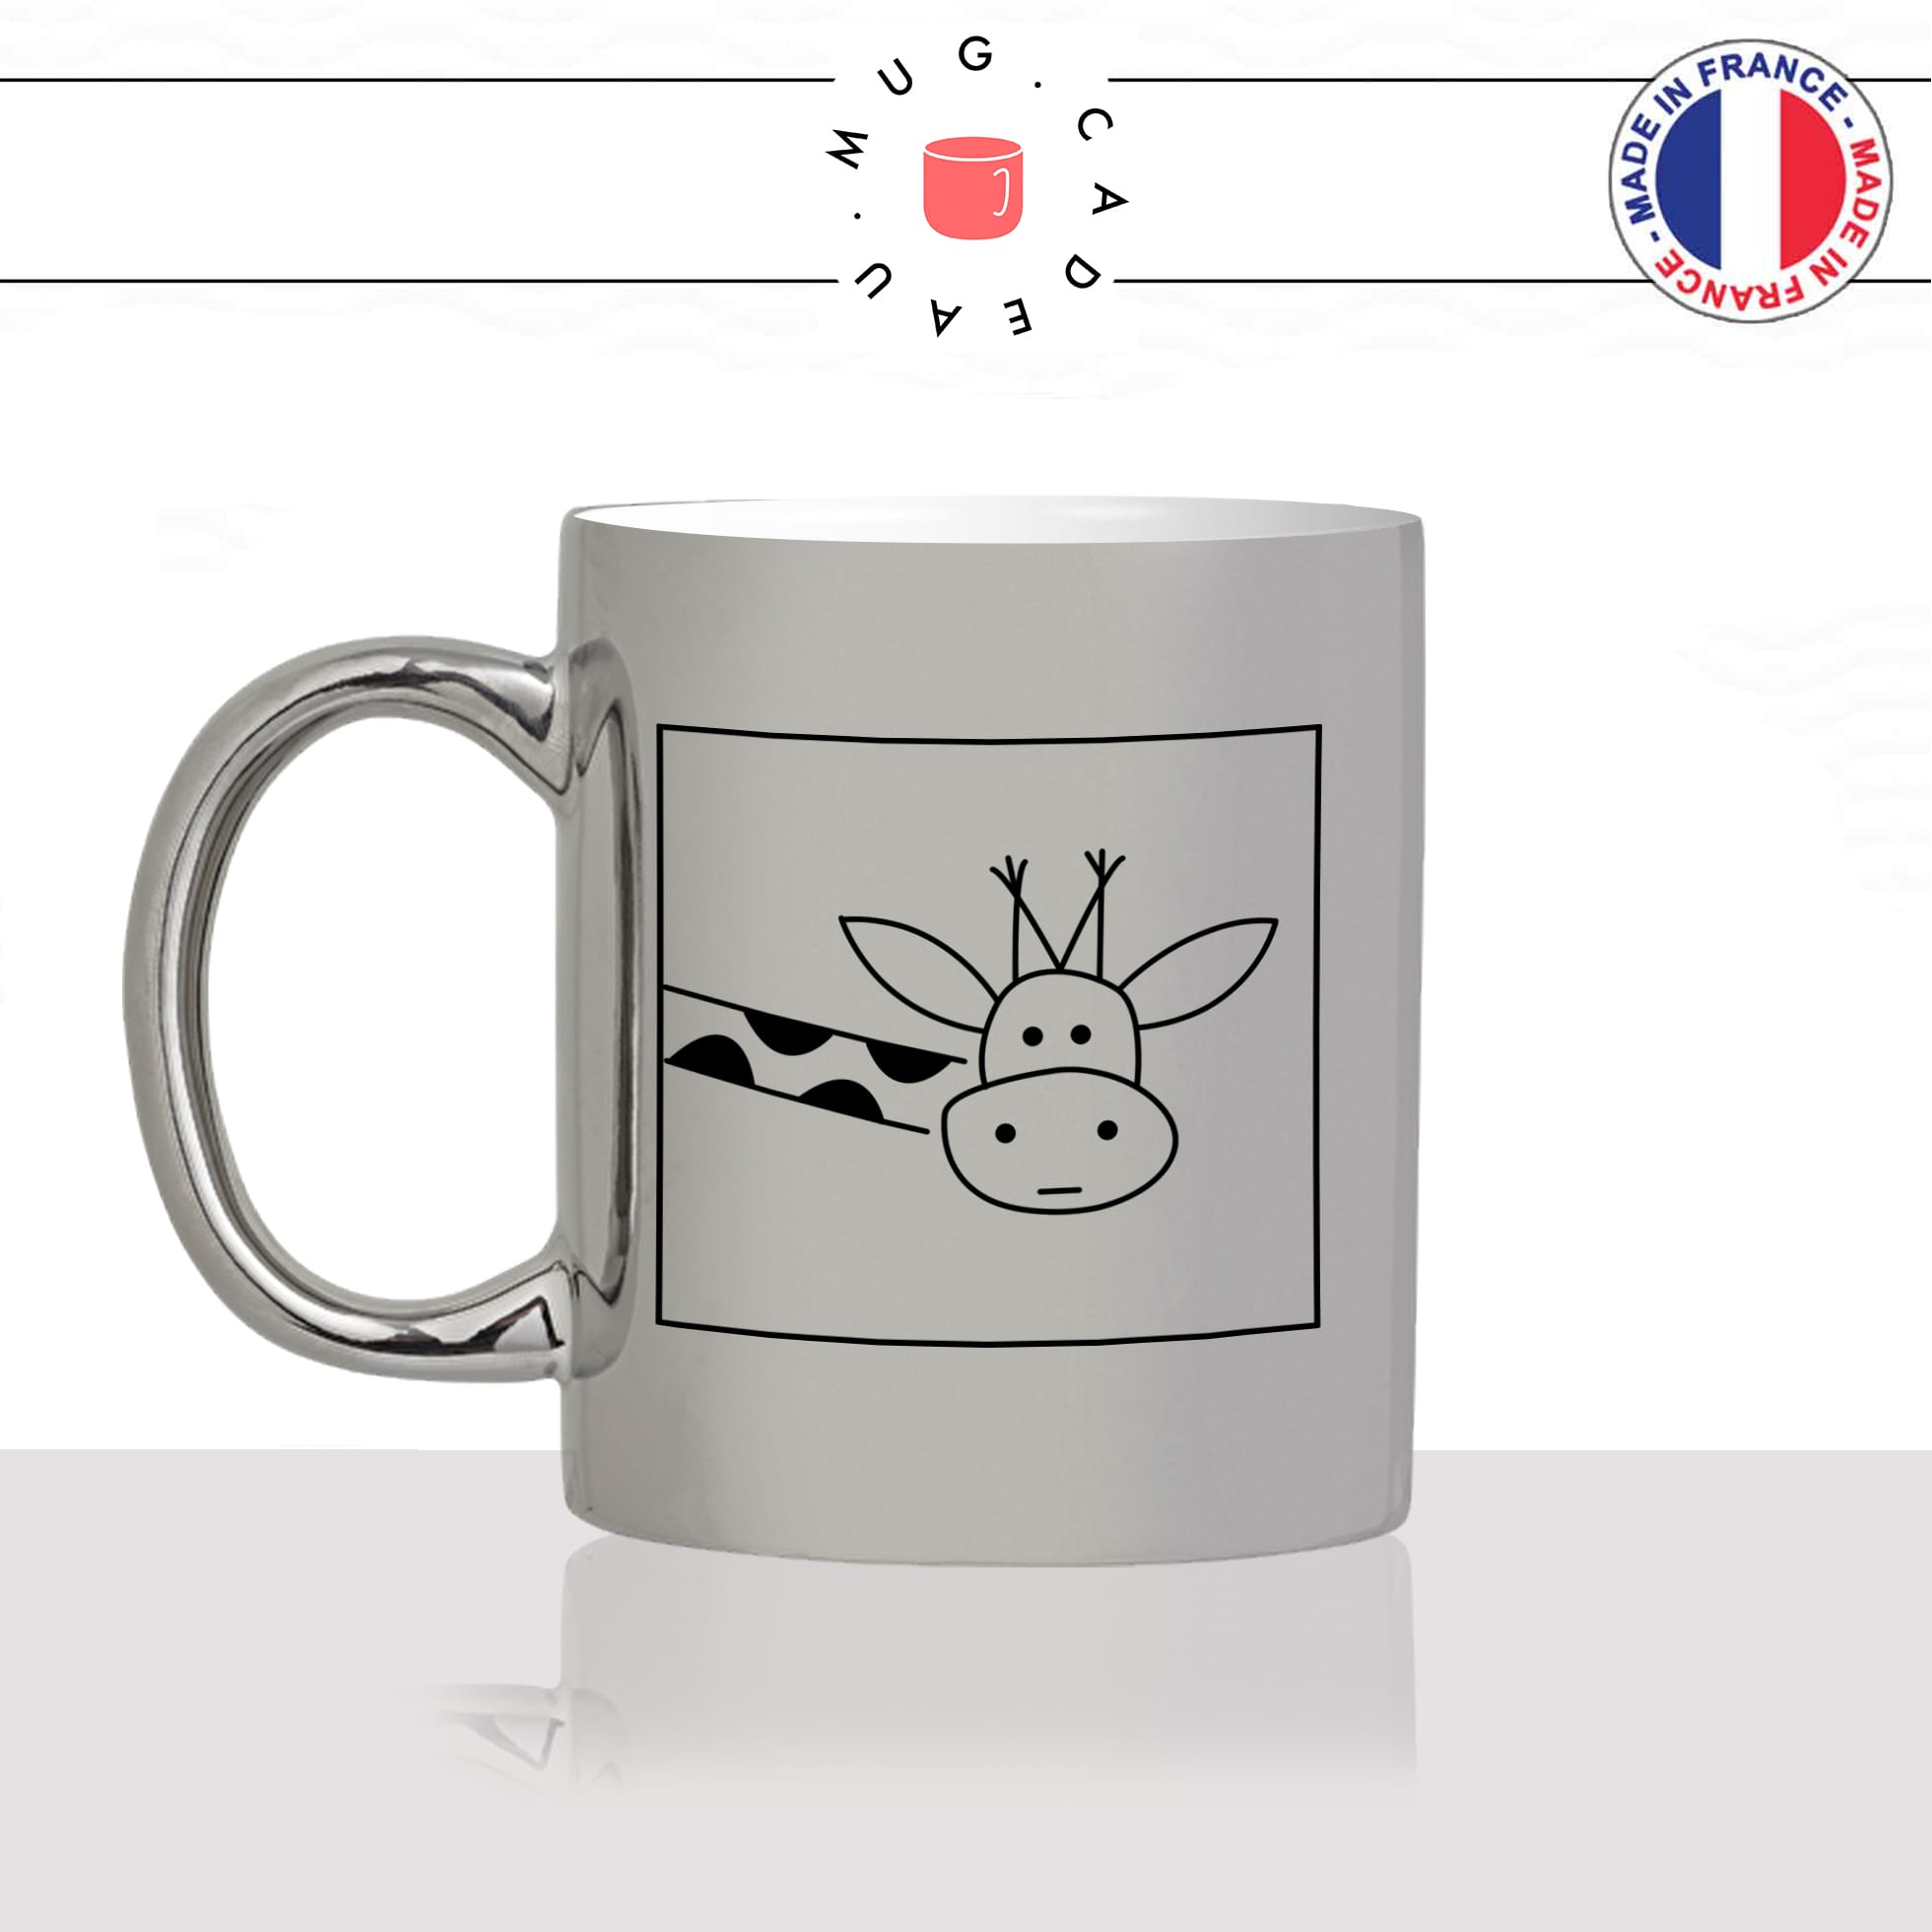 mug-tasse-silver-argenté-argent-giraphe-coucou-tete-cou-drole-mignon-animal-noir-fun-café-thé-idée-cadeau-original-personnalisé-min